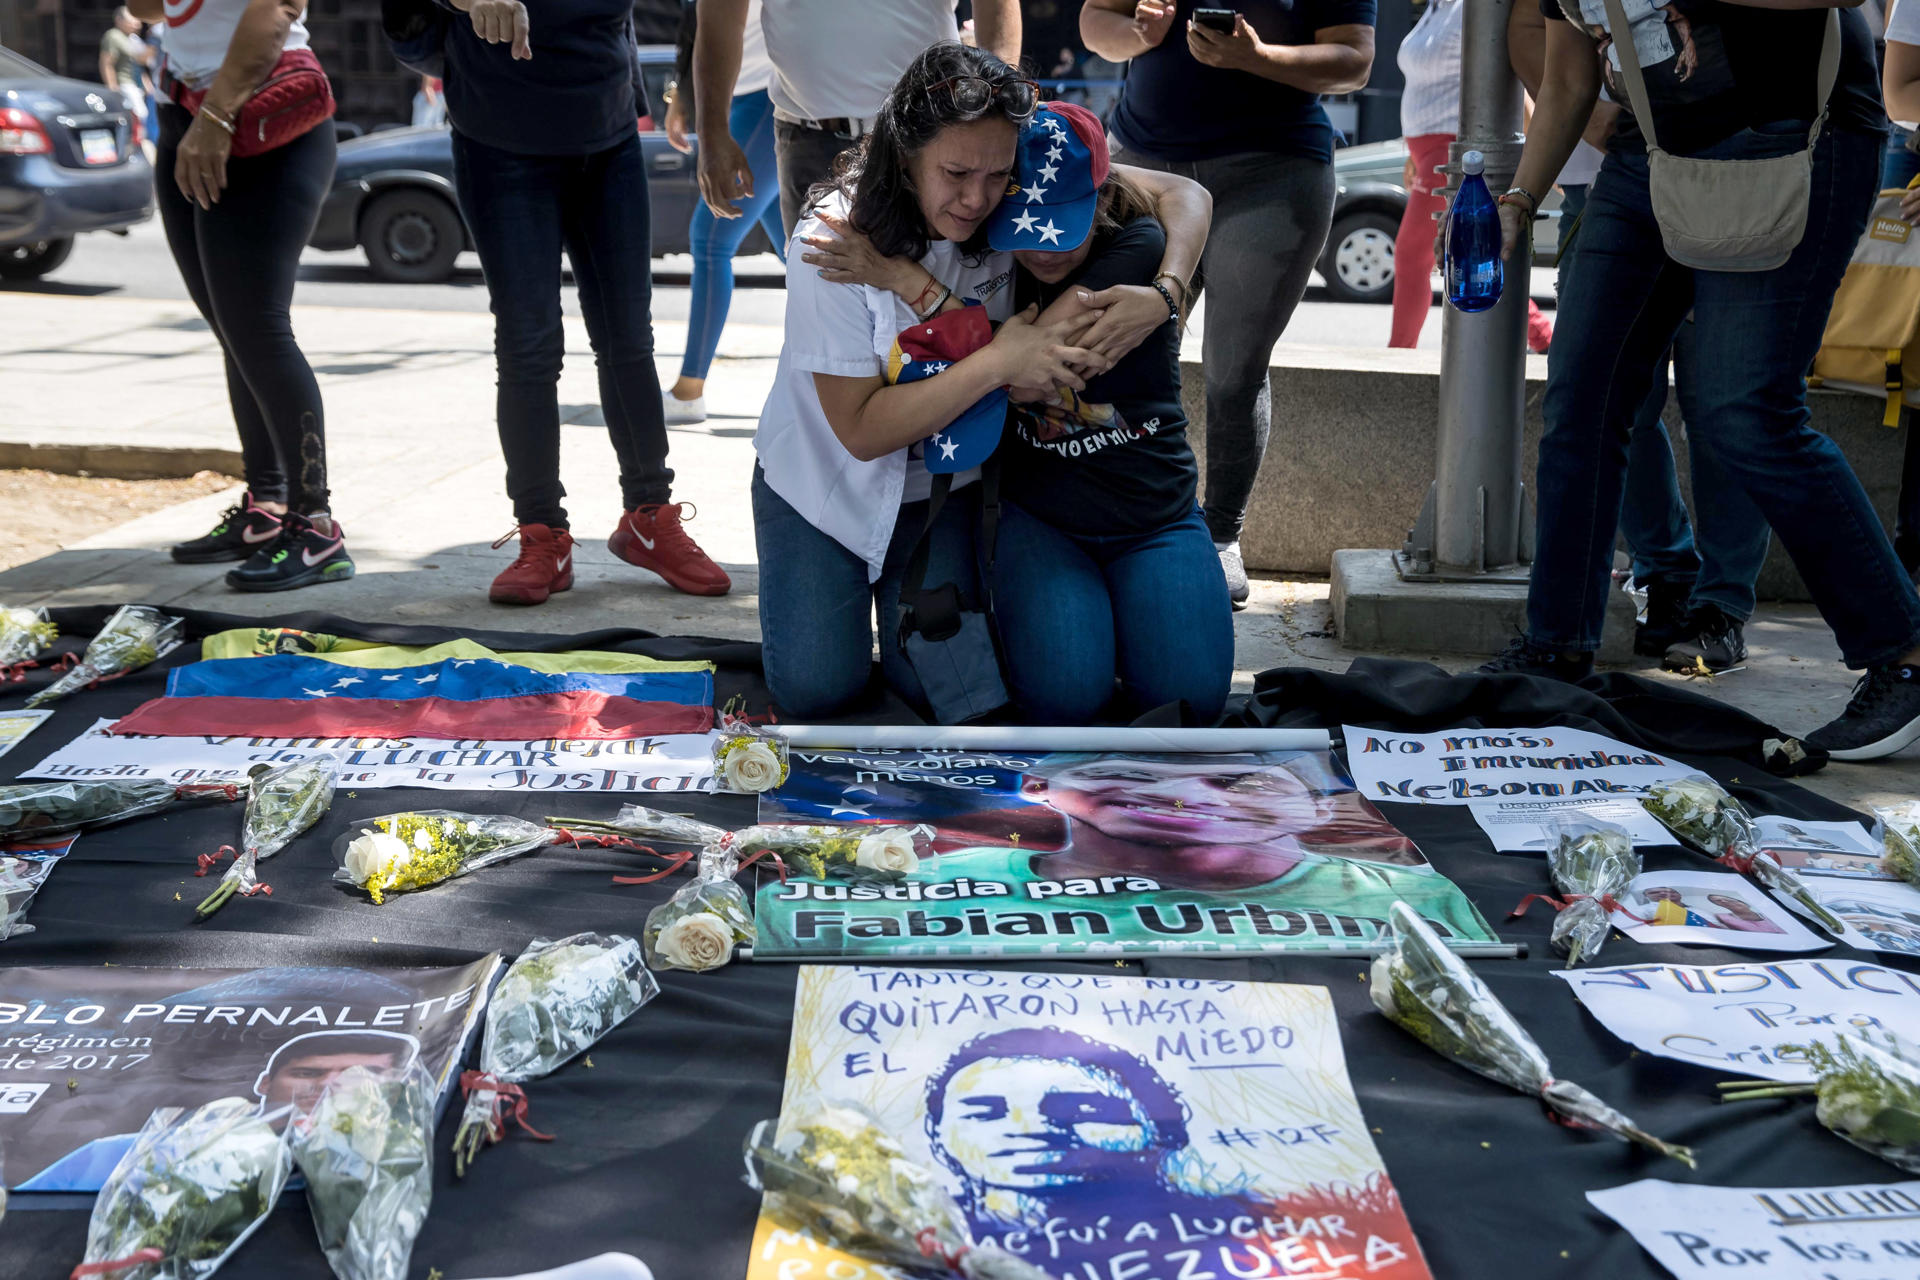 Foto de archivo en donde un grupo de personas participan en una manifestación frente a la sede del Ministerio Publico en Caracas por los asesinados en protestas antigubernamentales en 2017.